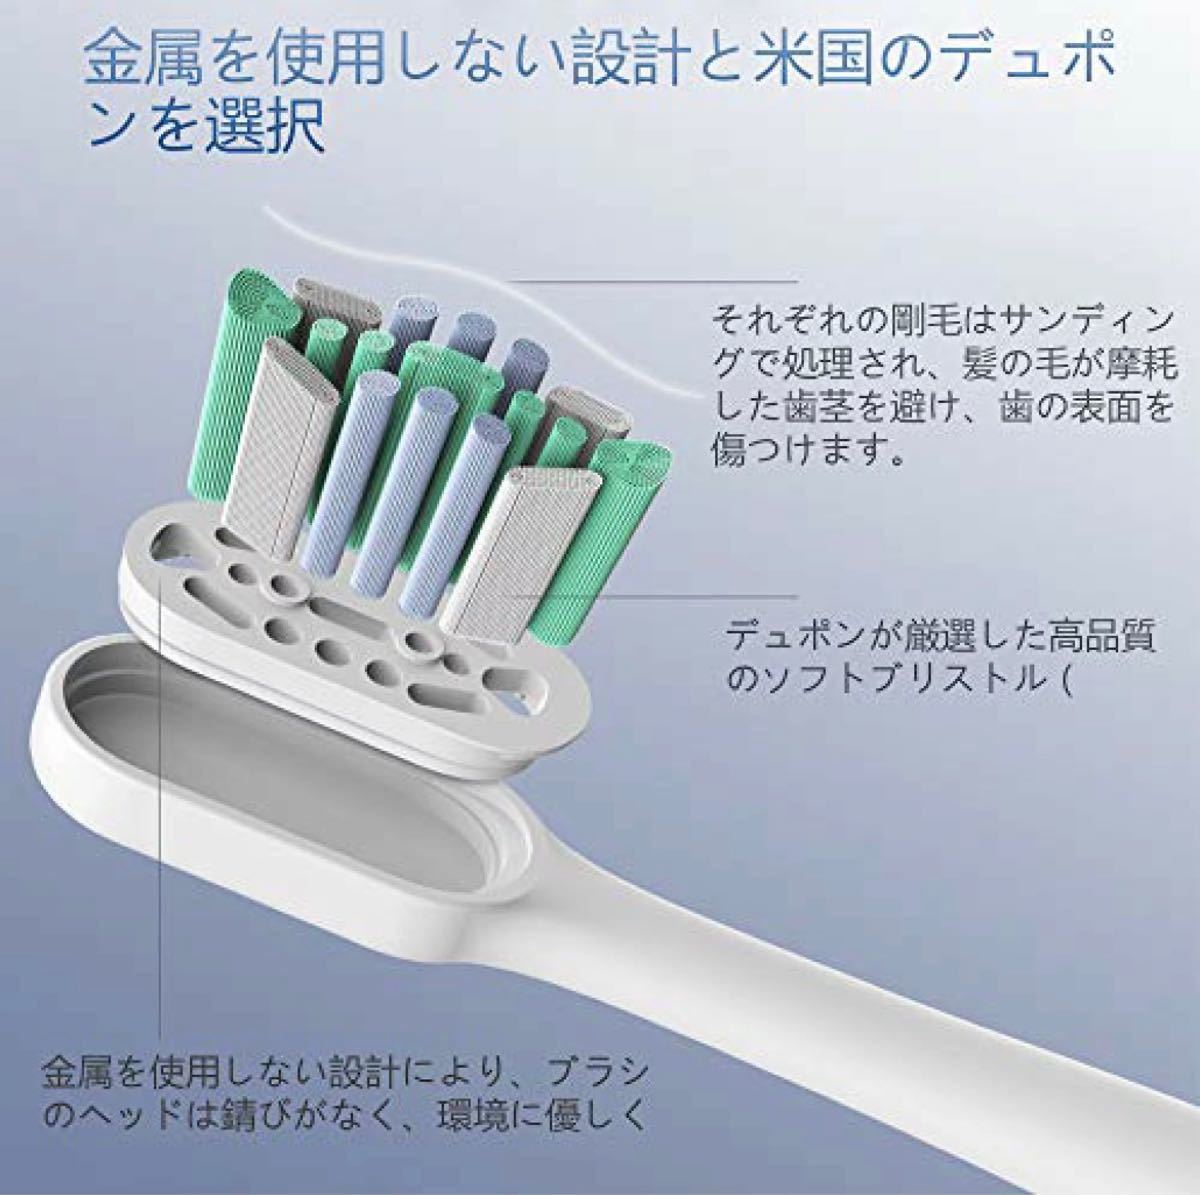 新品 電動歯ブラシ IPX7防水 超音波歯ブラシ USB 充電式 